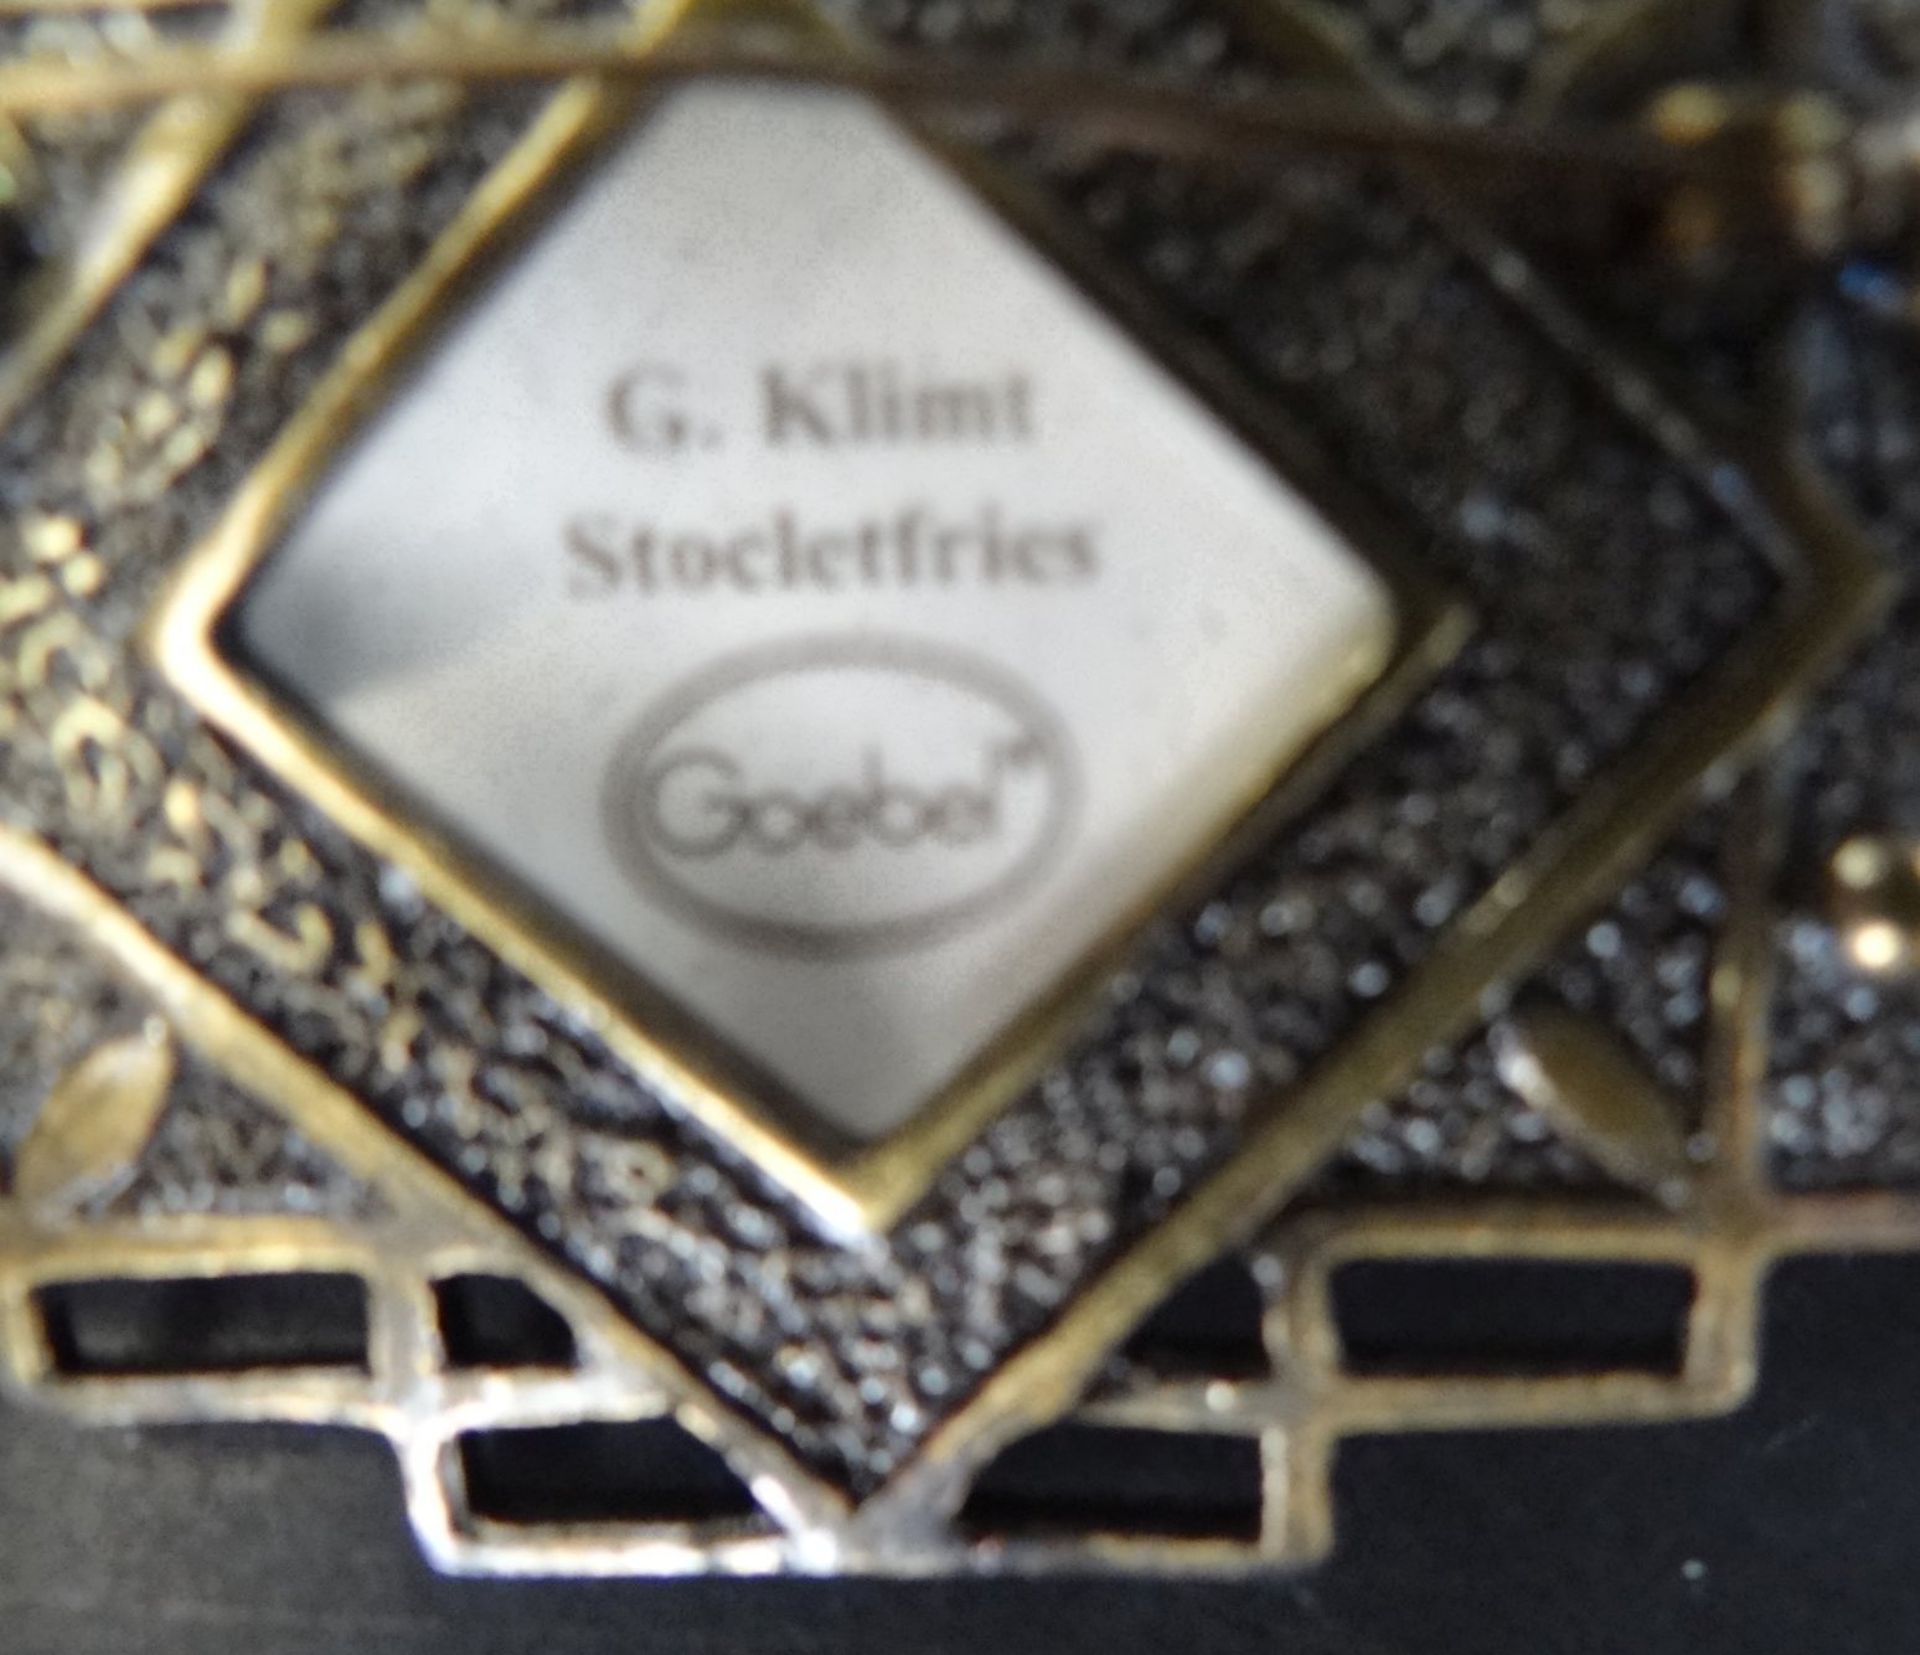 Schmuck nach G. Klimt, Stockletfries, von Goebel, Artis Orbis, Kette mit Anhänger und Brosche, in - Image 5 of 6